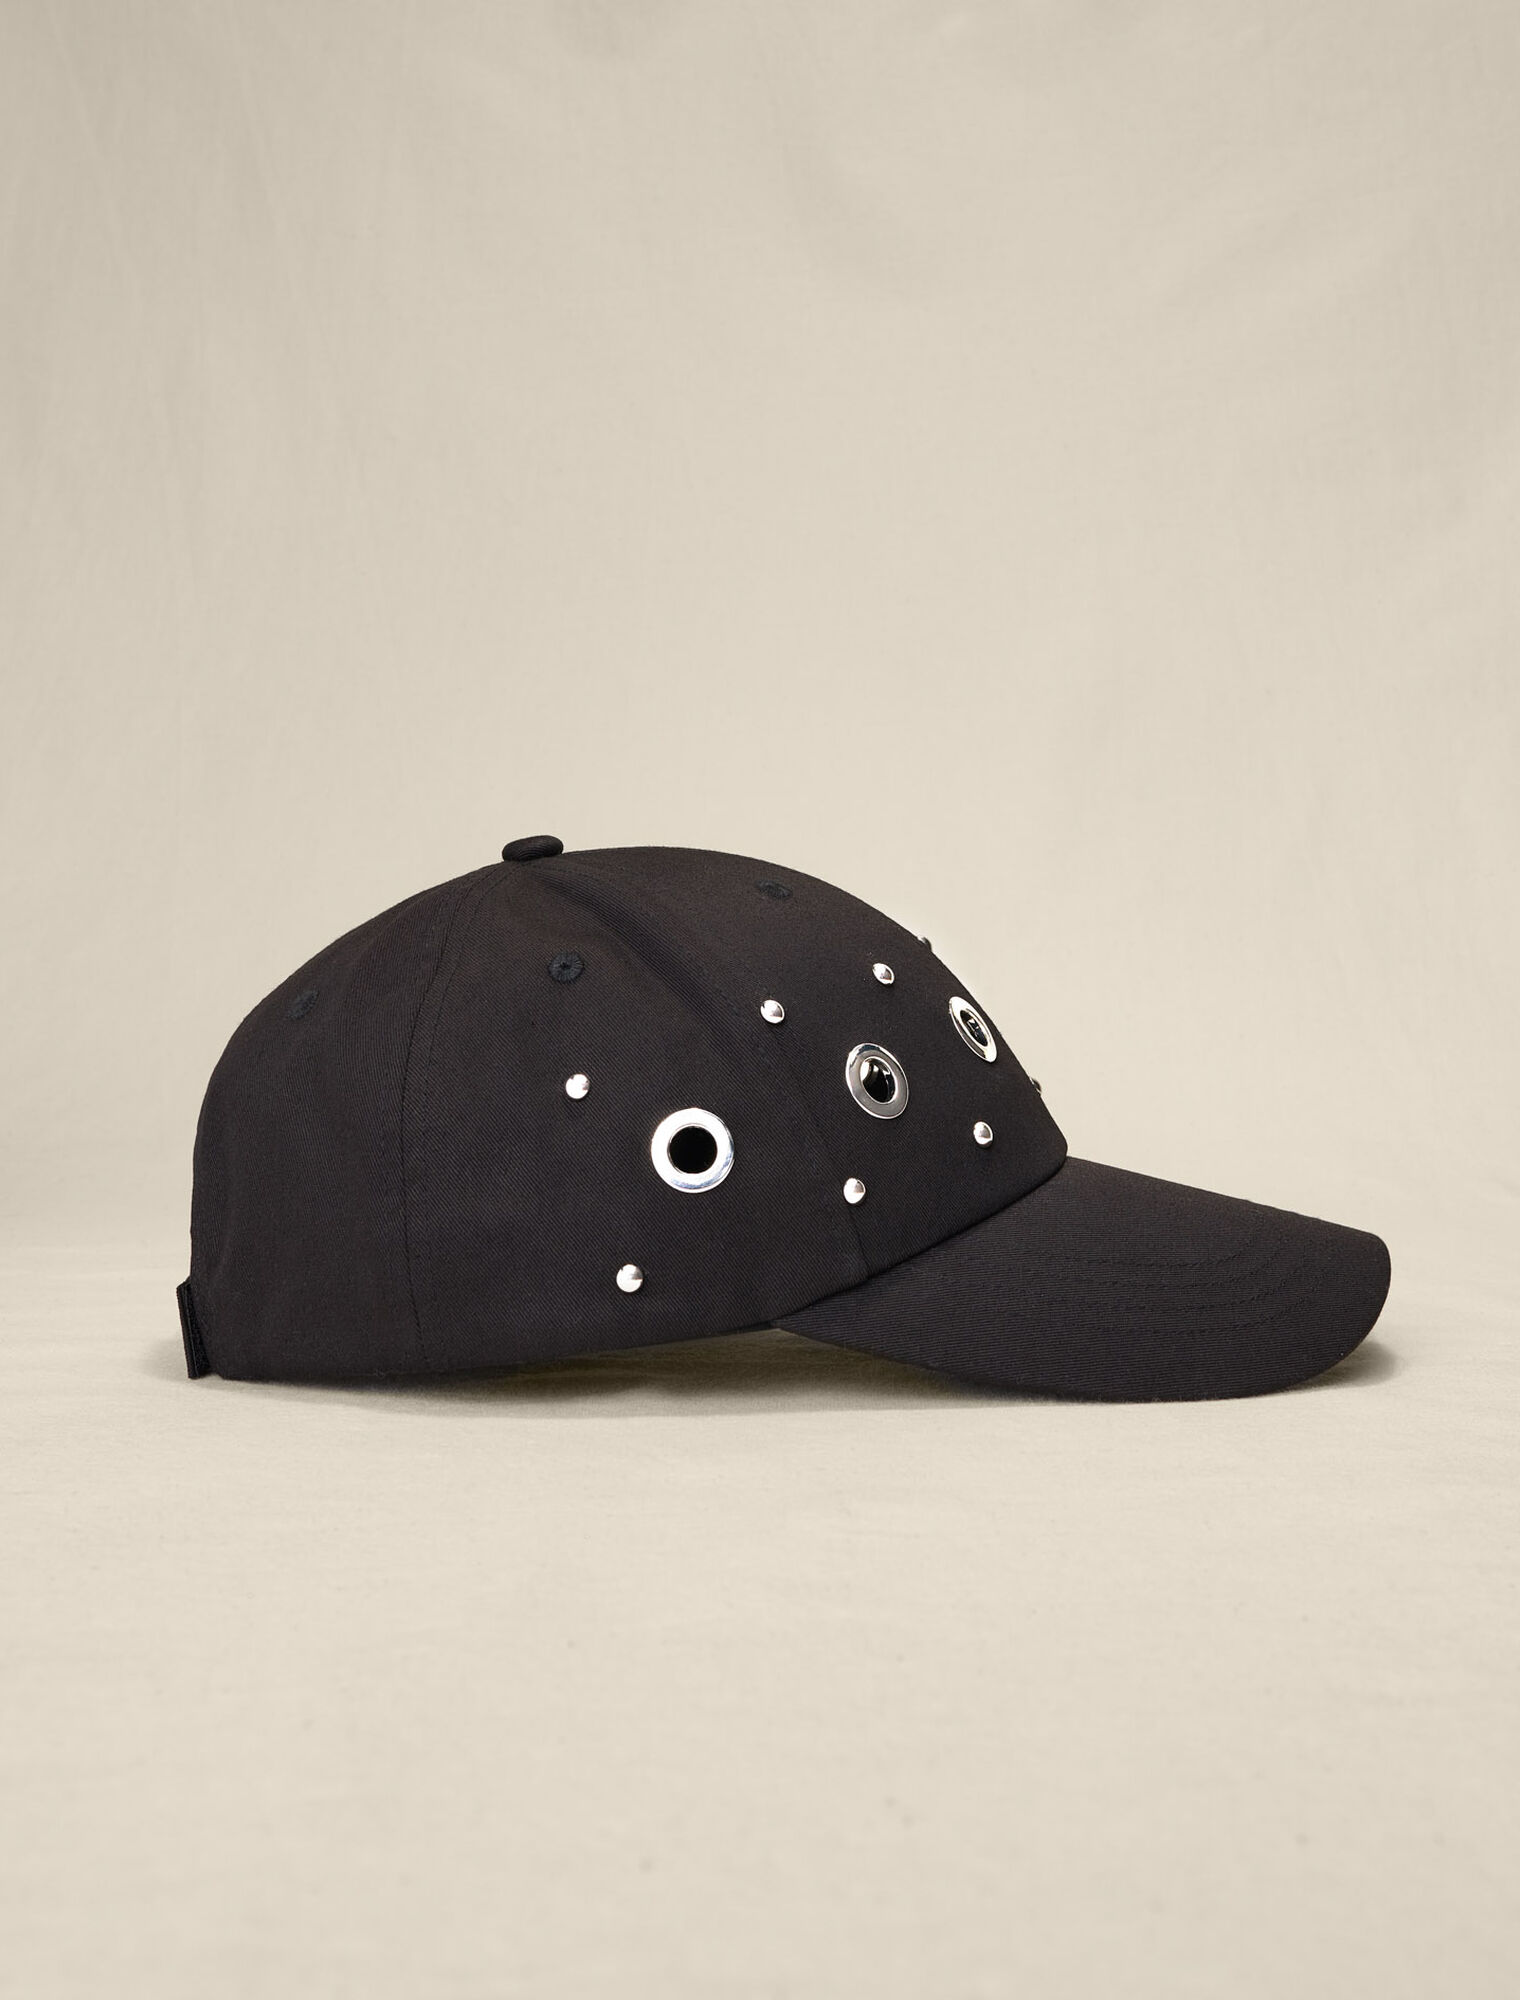 Studded baseball cap